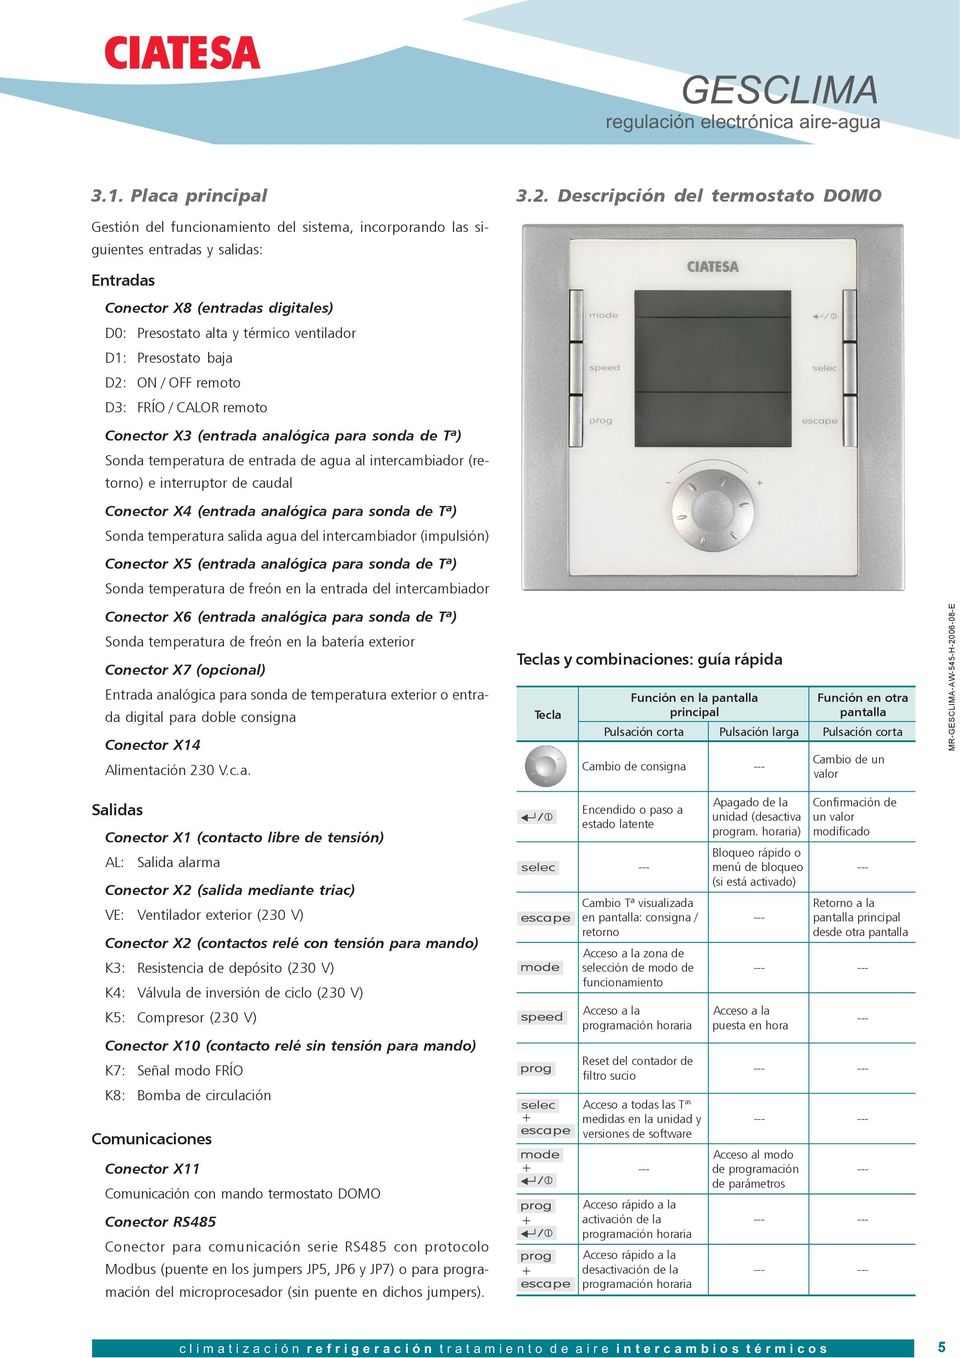 MANUAL DE REGULACIÓN. regulación electrónica equipos aire-agua Nº 2006 / 08 - PDF Free